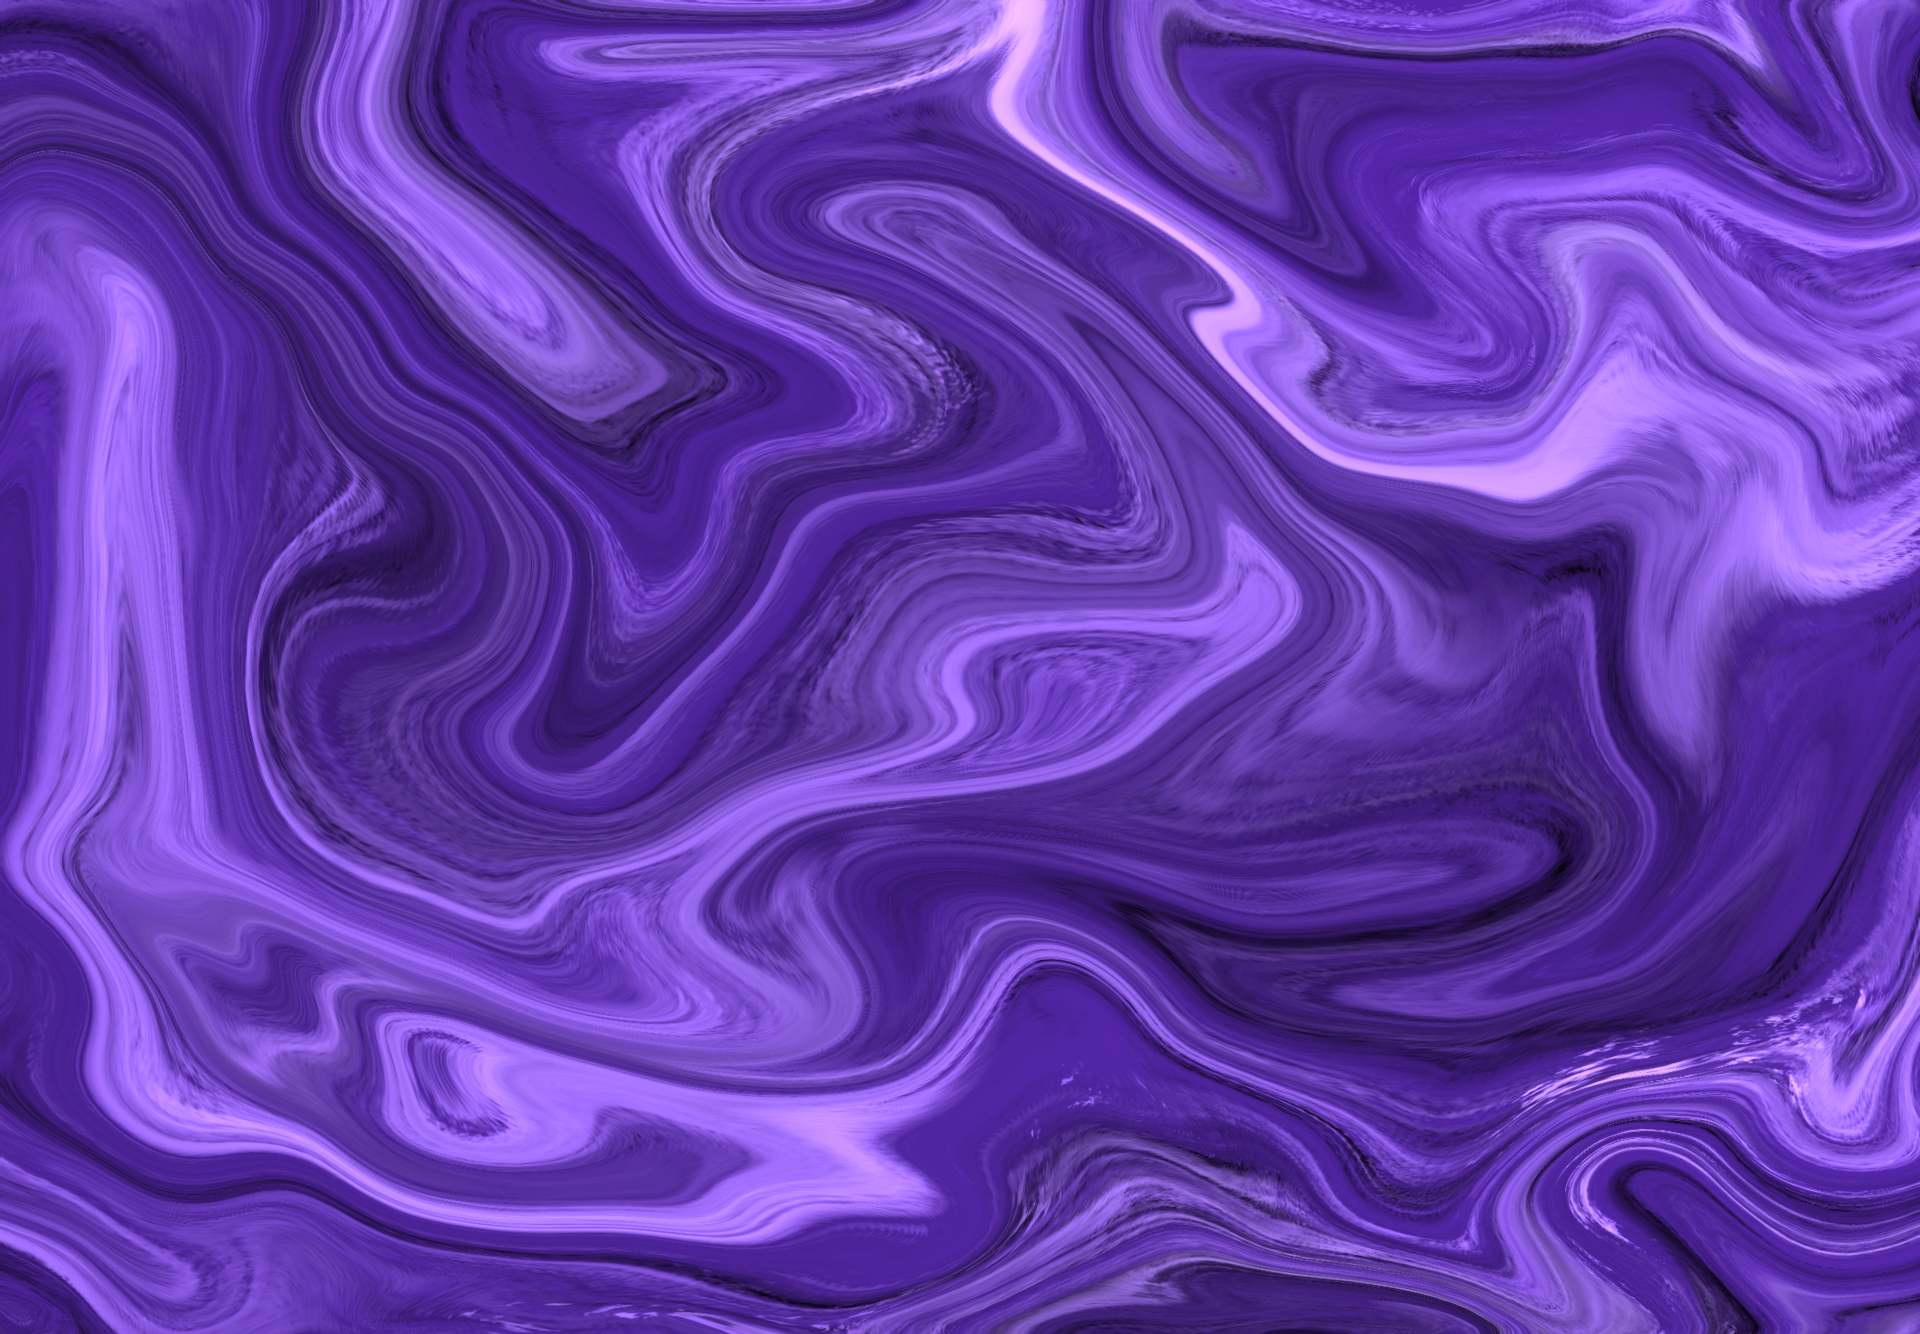 Fluid_Purple, width 1920, jpg